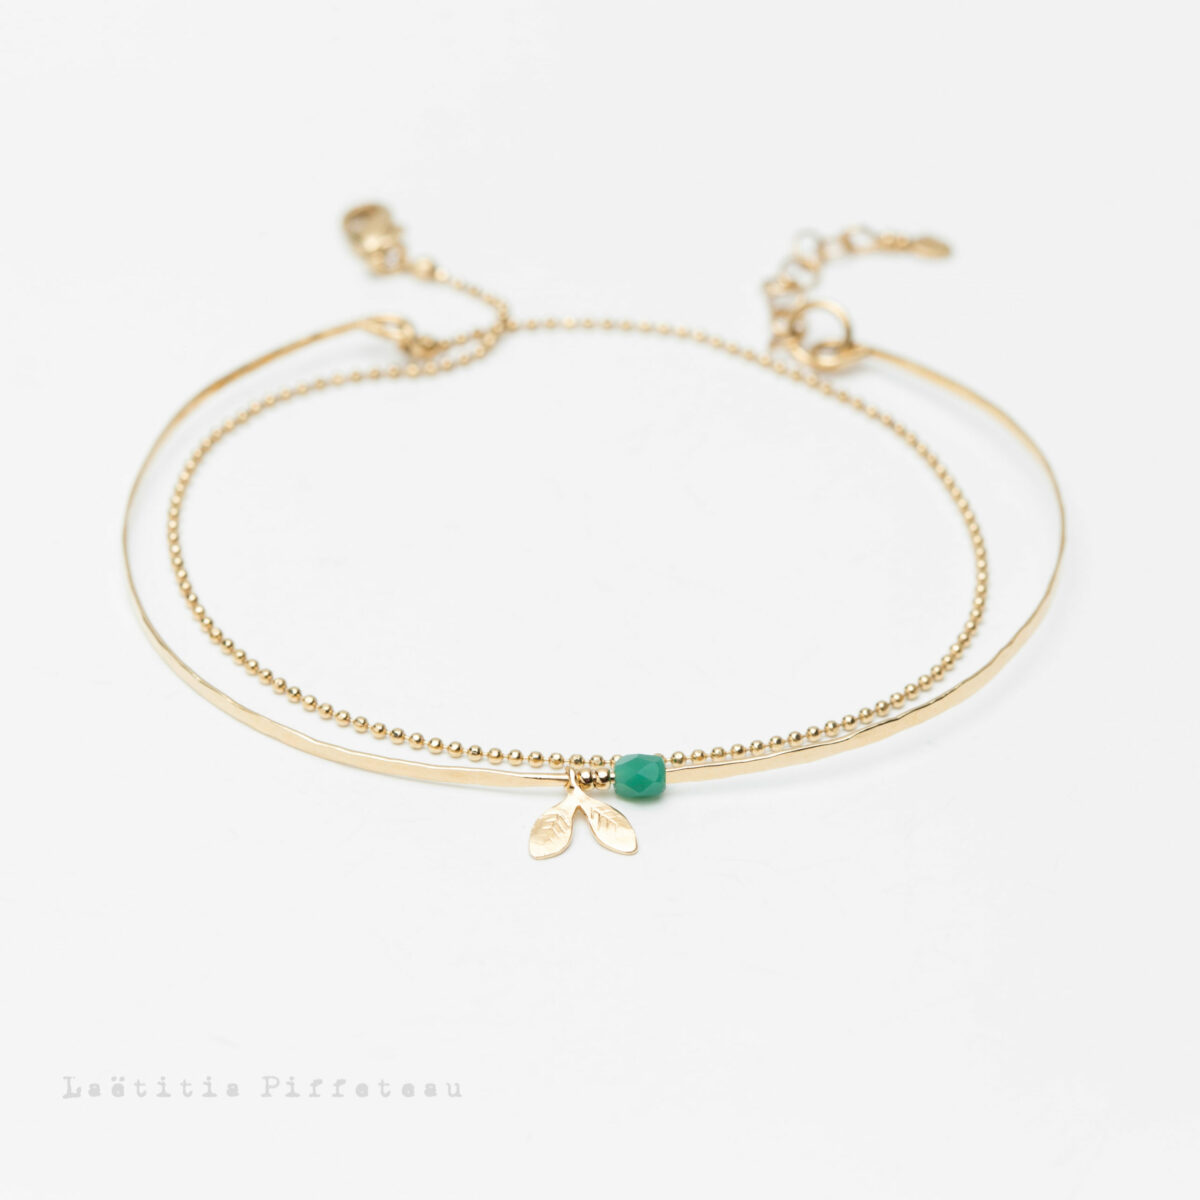 Bracelet Lilas Vert - bracelet double Jonc martelé et chaine or Laëtitia Piffeteau